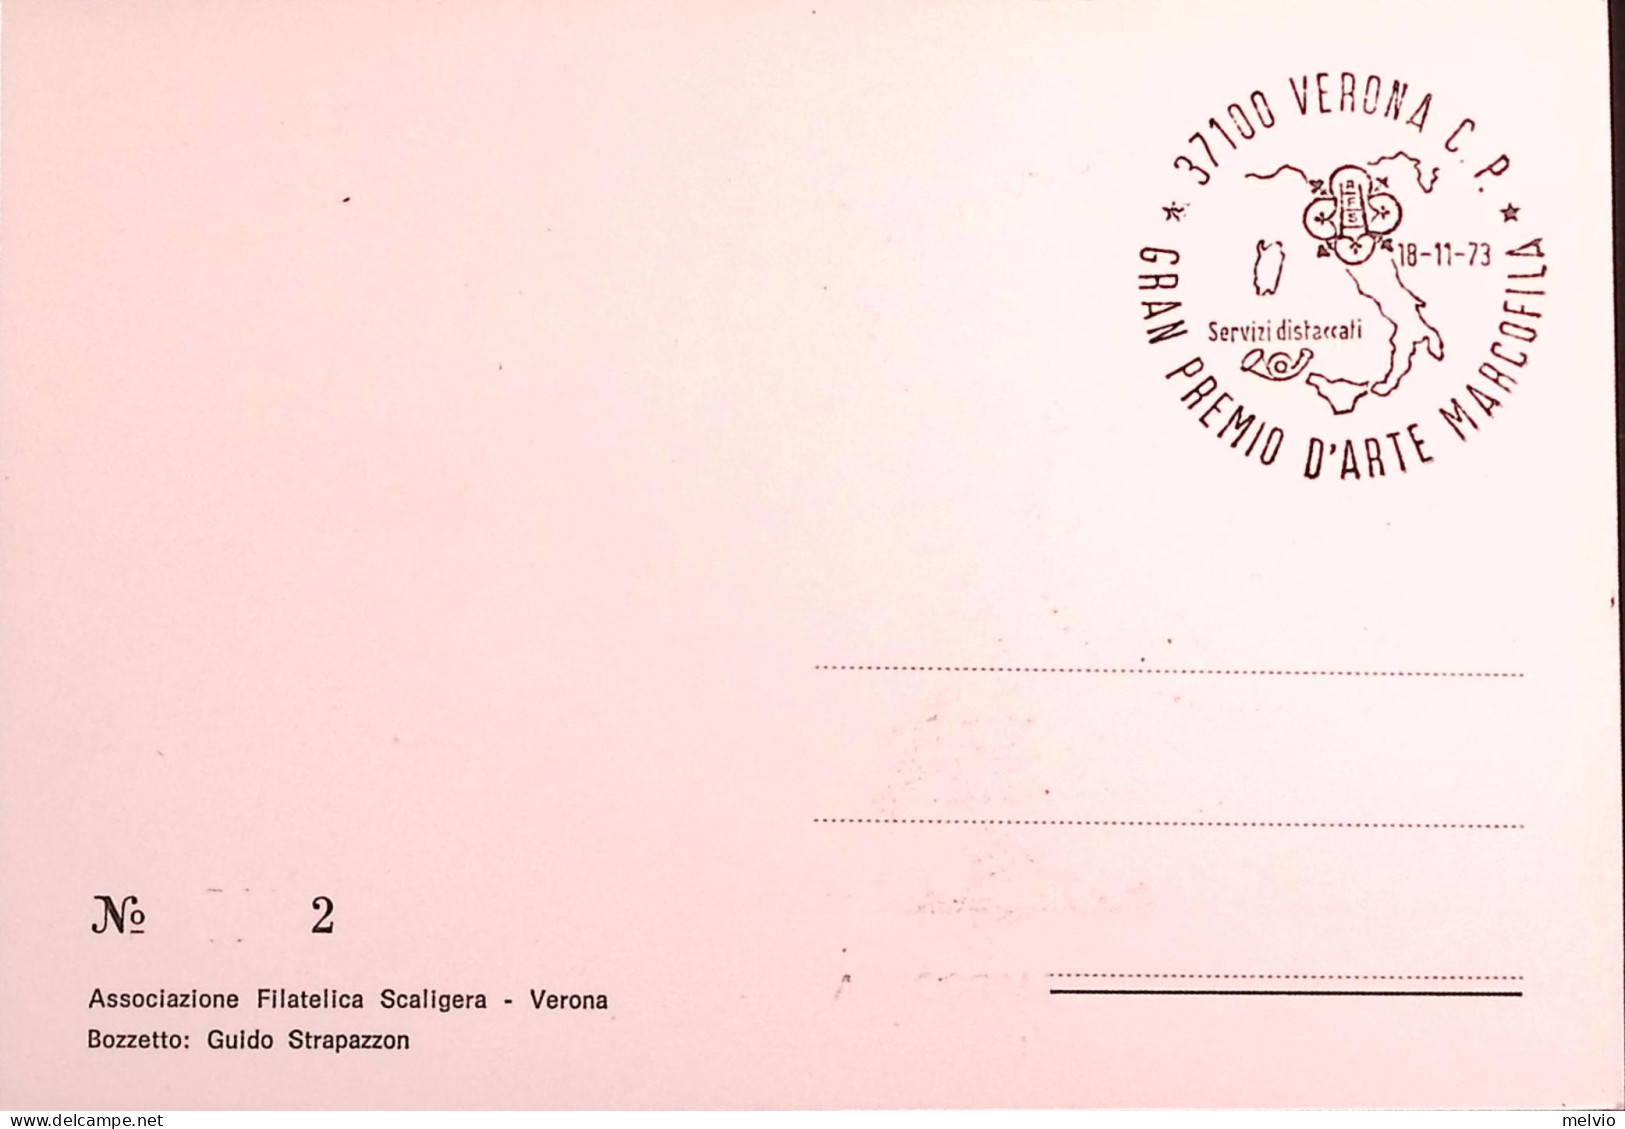 1973-VERONA GRAN PREMIO ARTE MARCOFILA (18.11) Annullo Speciale Su Cartolina - 1971-80: Marcophilie